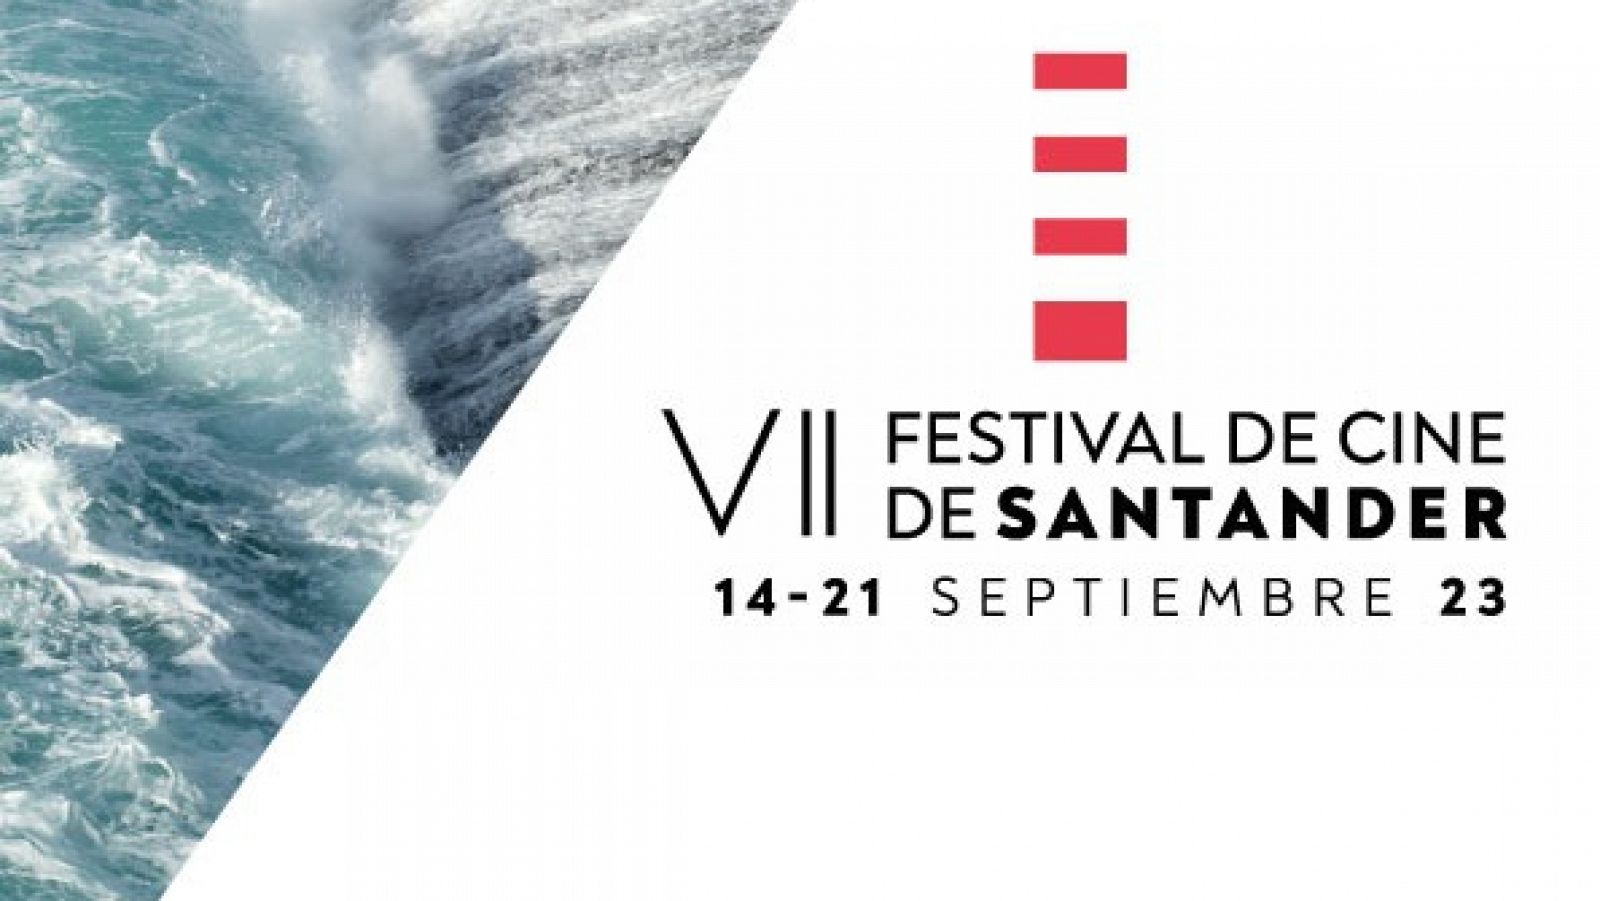 Detalle del cartel del Festival de Cine de Santander